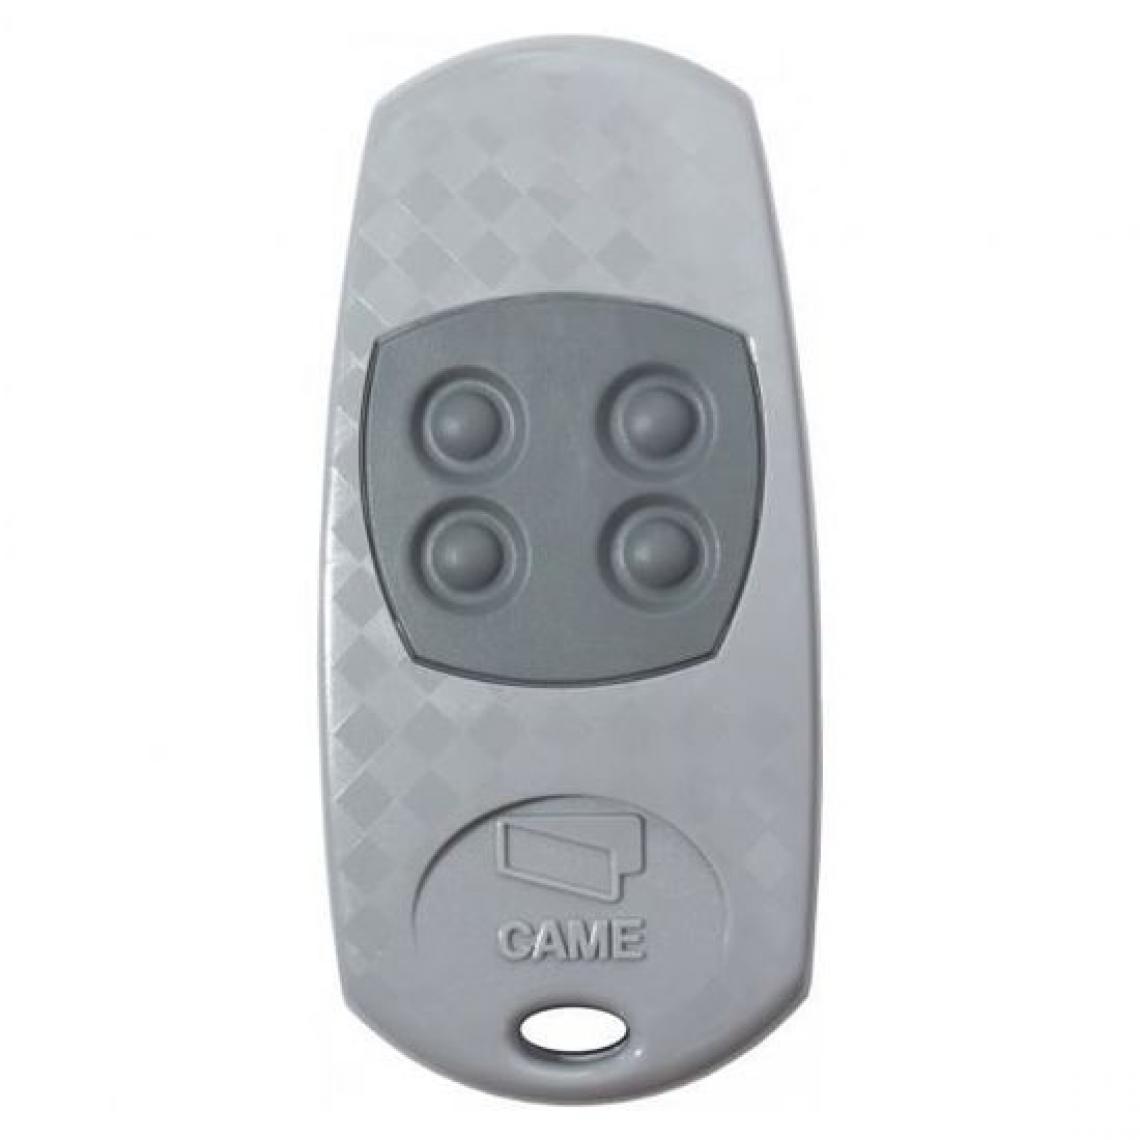 Came - Télécommande CAME Top434ee - Accessoires de motorisation